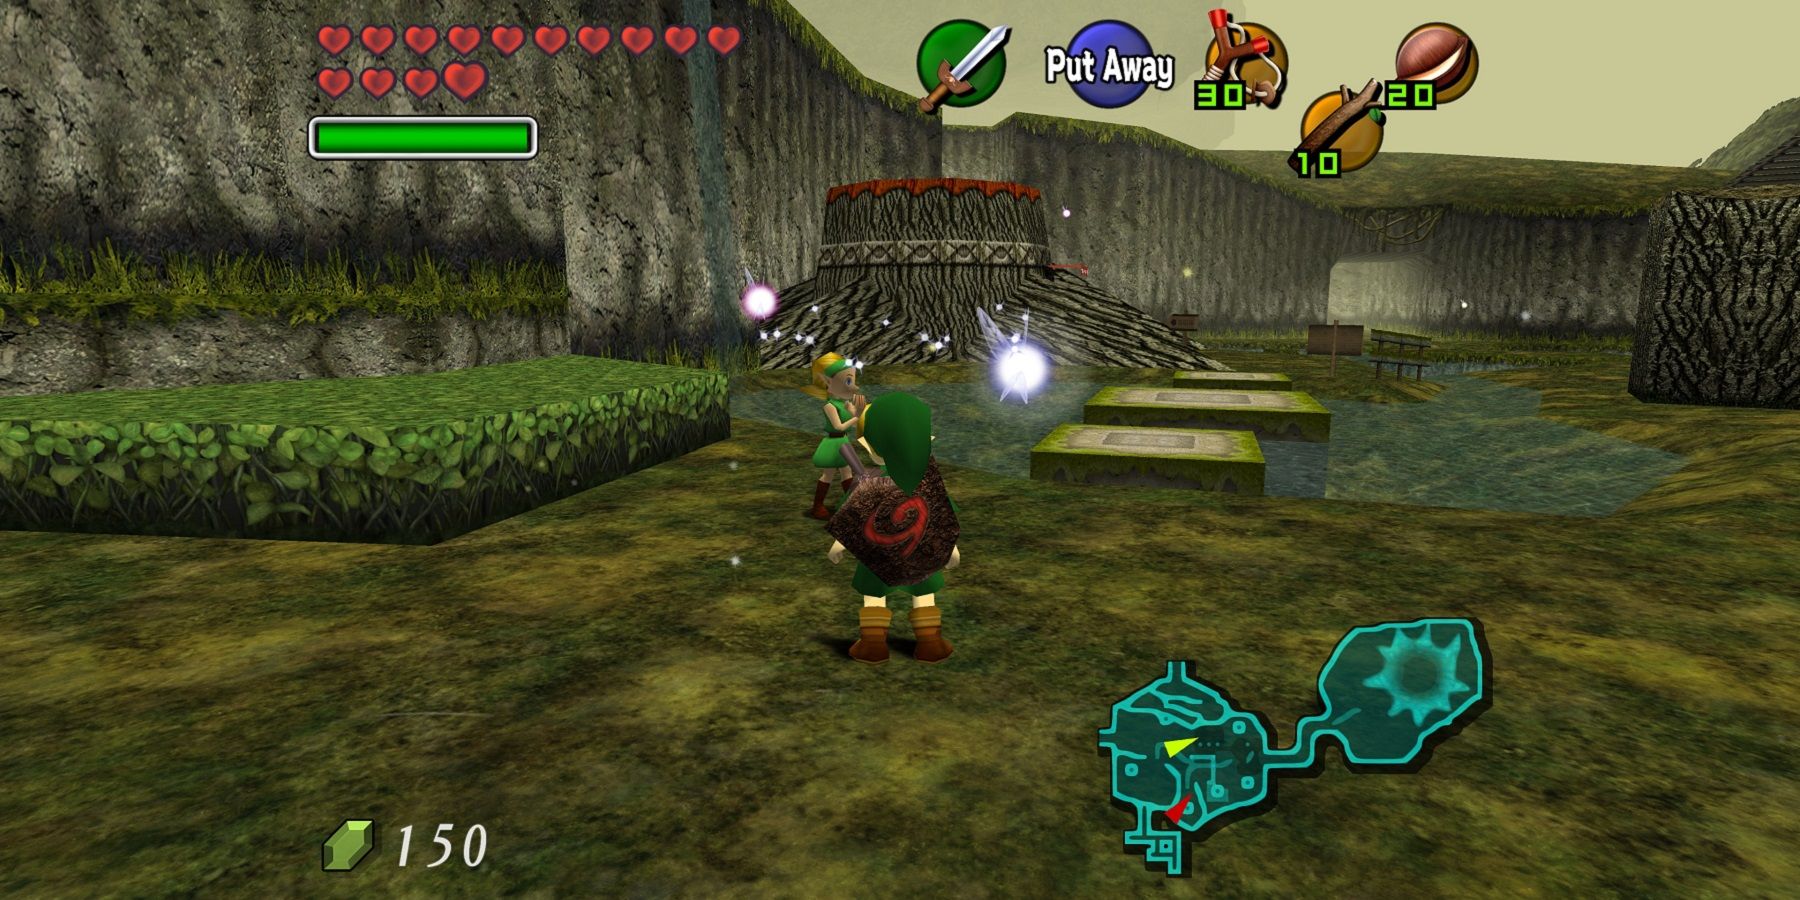 Изображение из Legend of Zelda: Ocarina of Time, на котором показаны Линк и Нави.